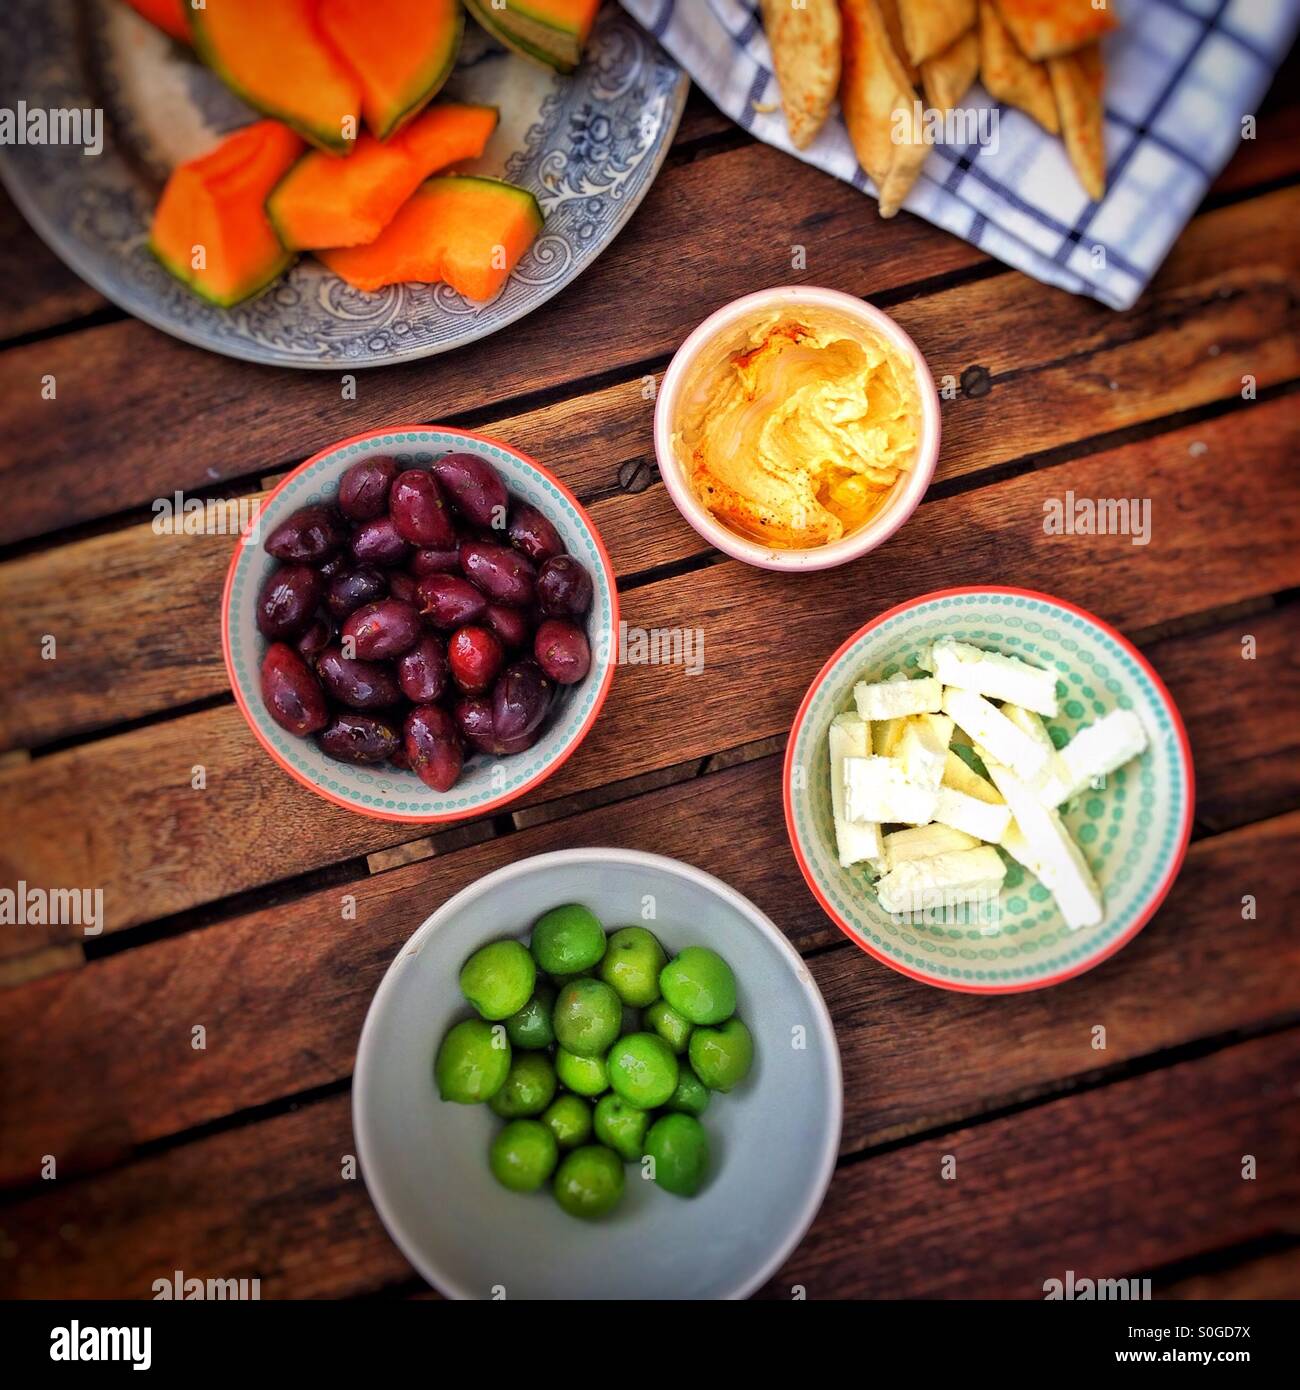 Aceitunas, houmous, queso y melón sobre una tabla de madera Foto de stock